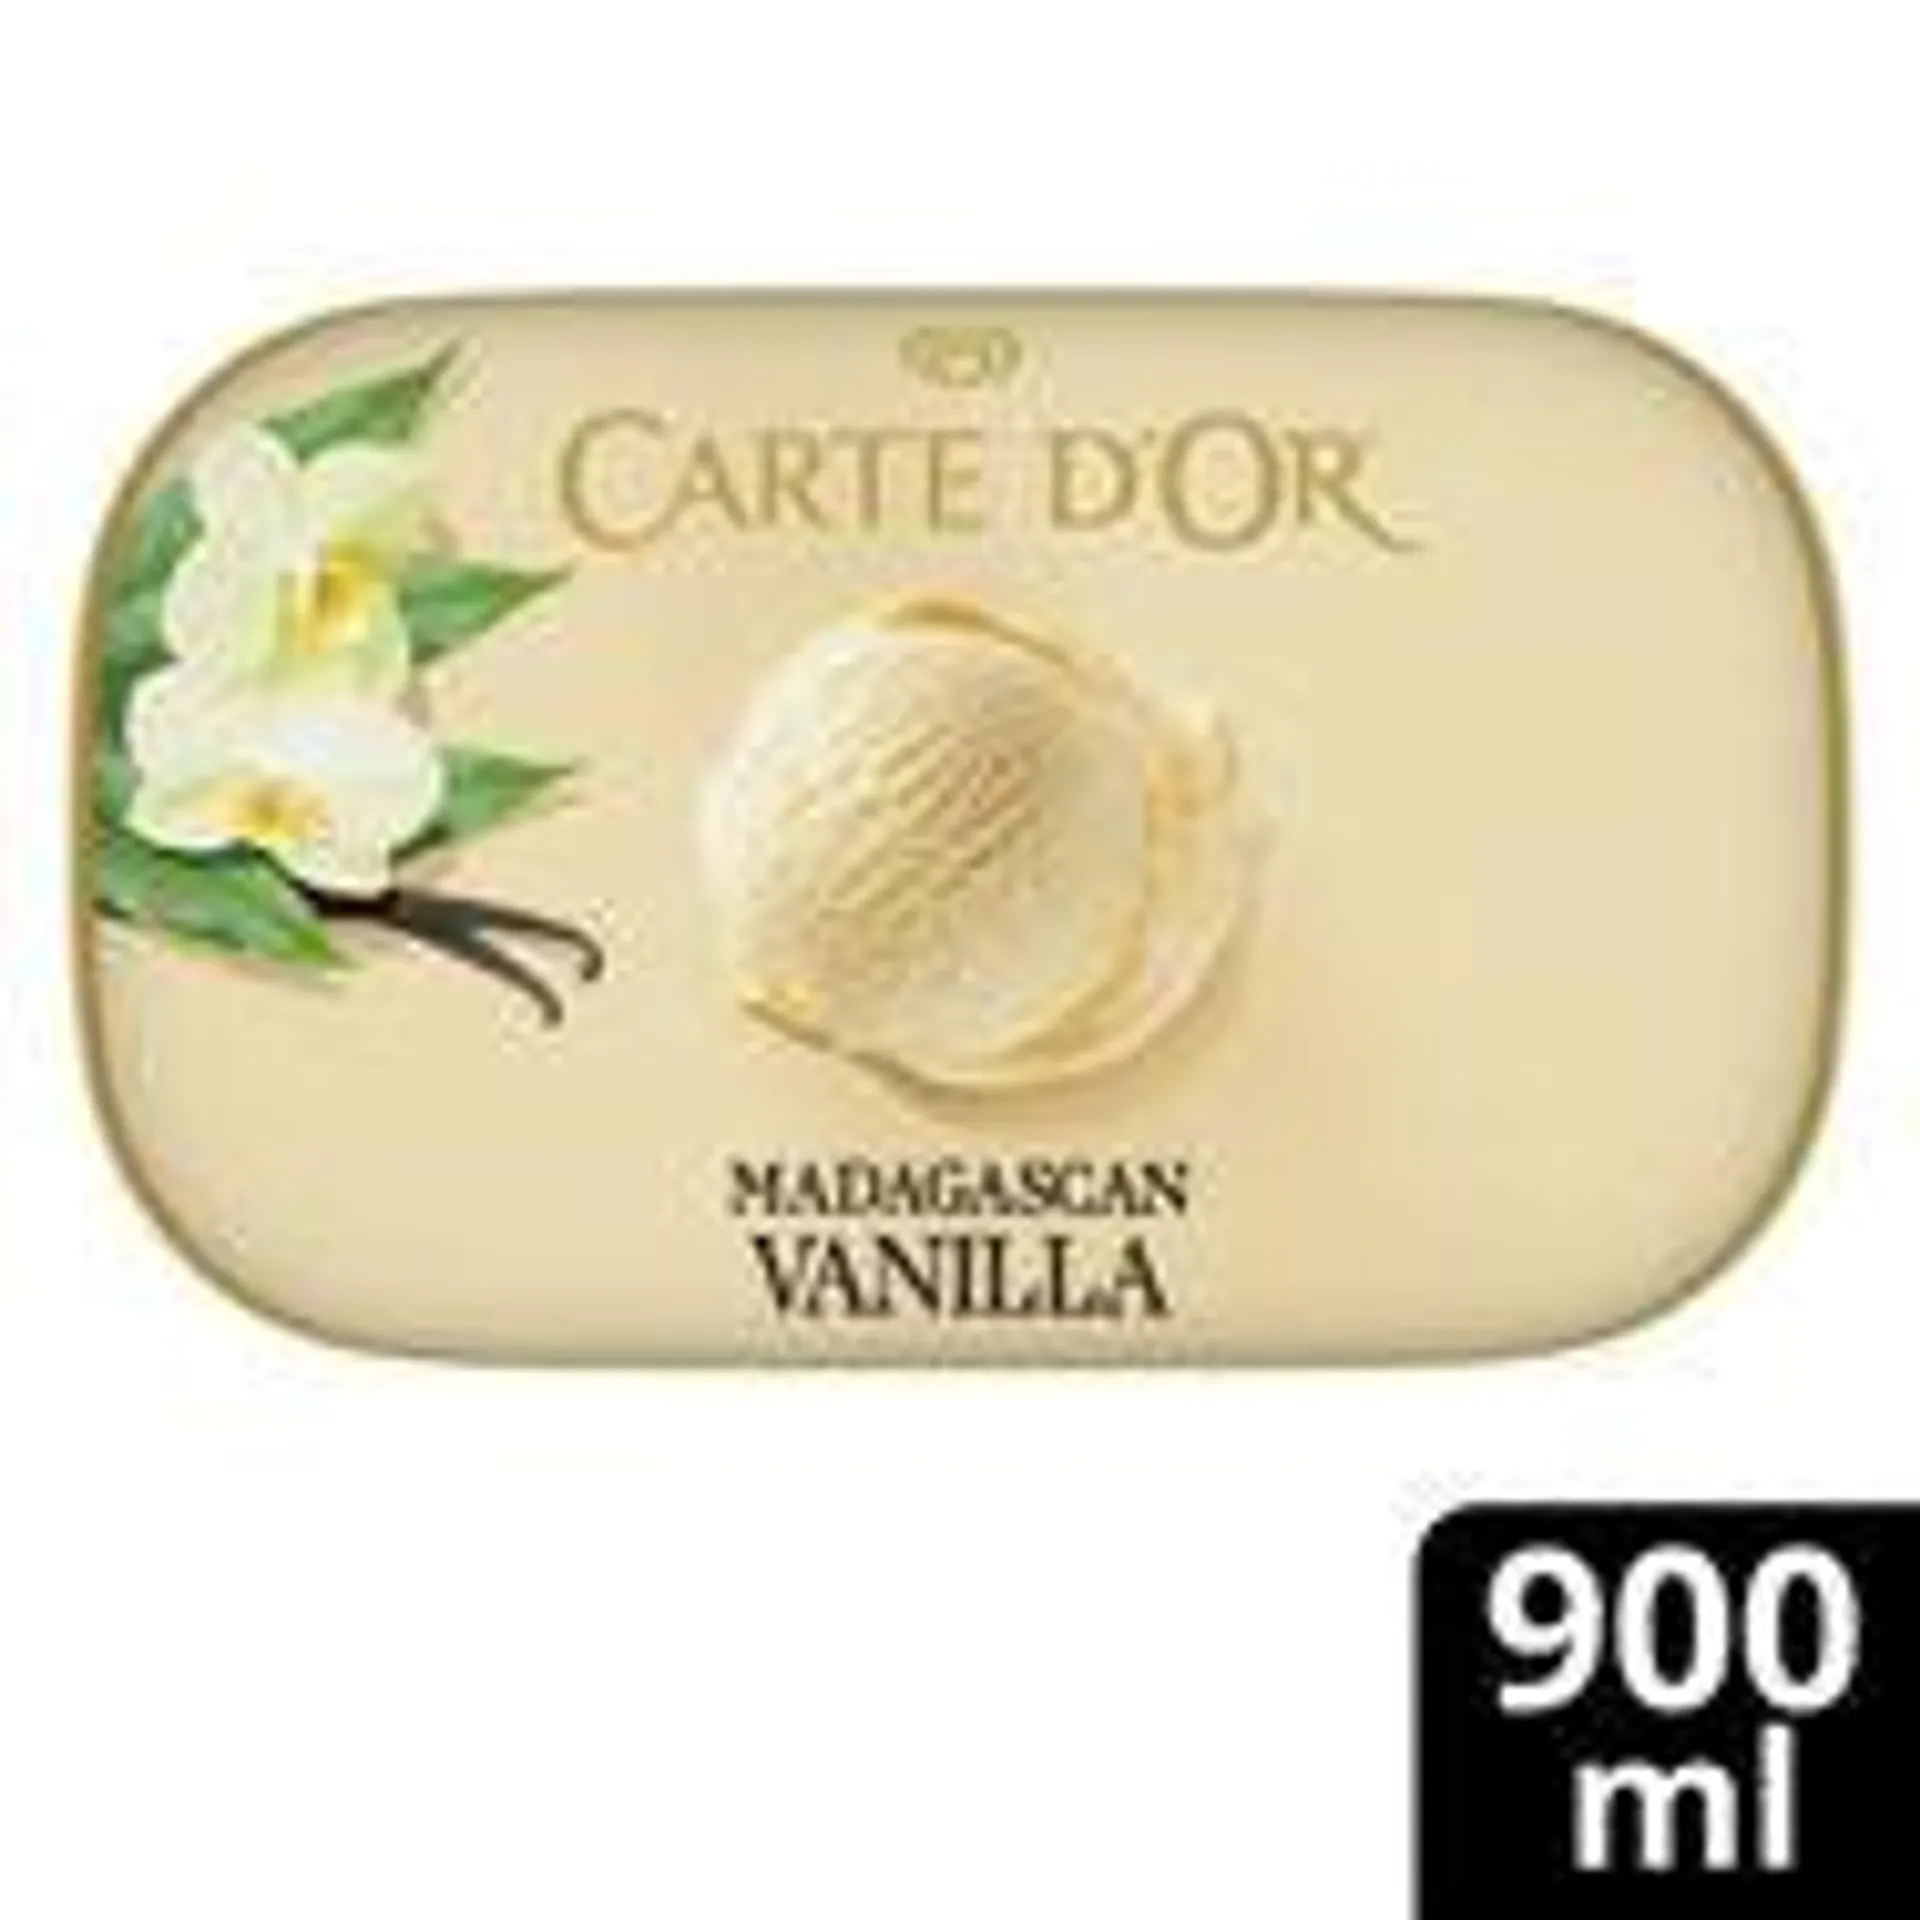 Carte D'Or Madagascan Vanilla Ice Cream Dessert